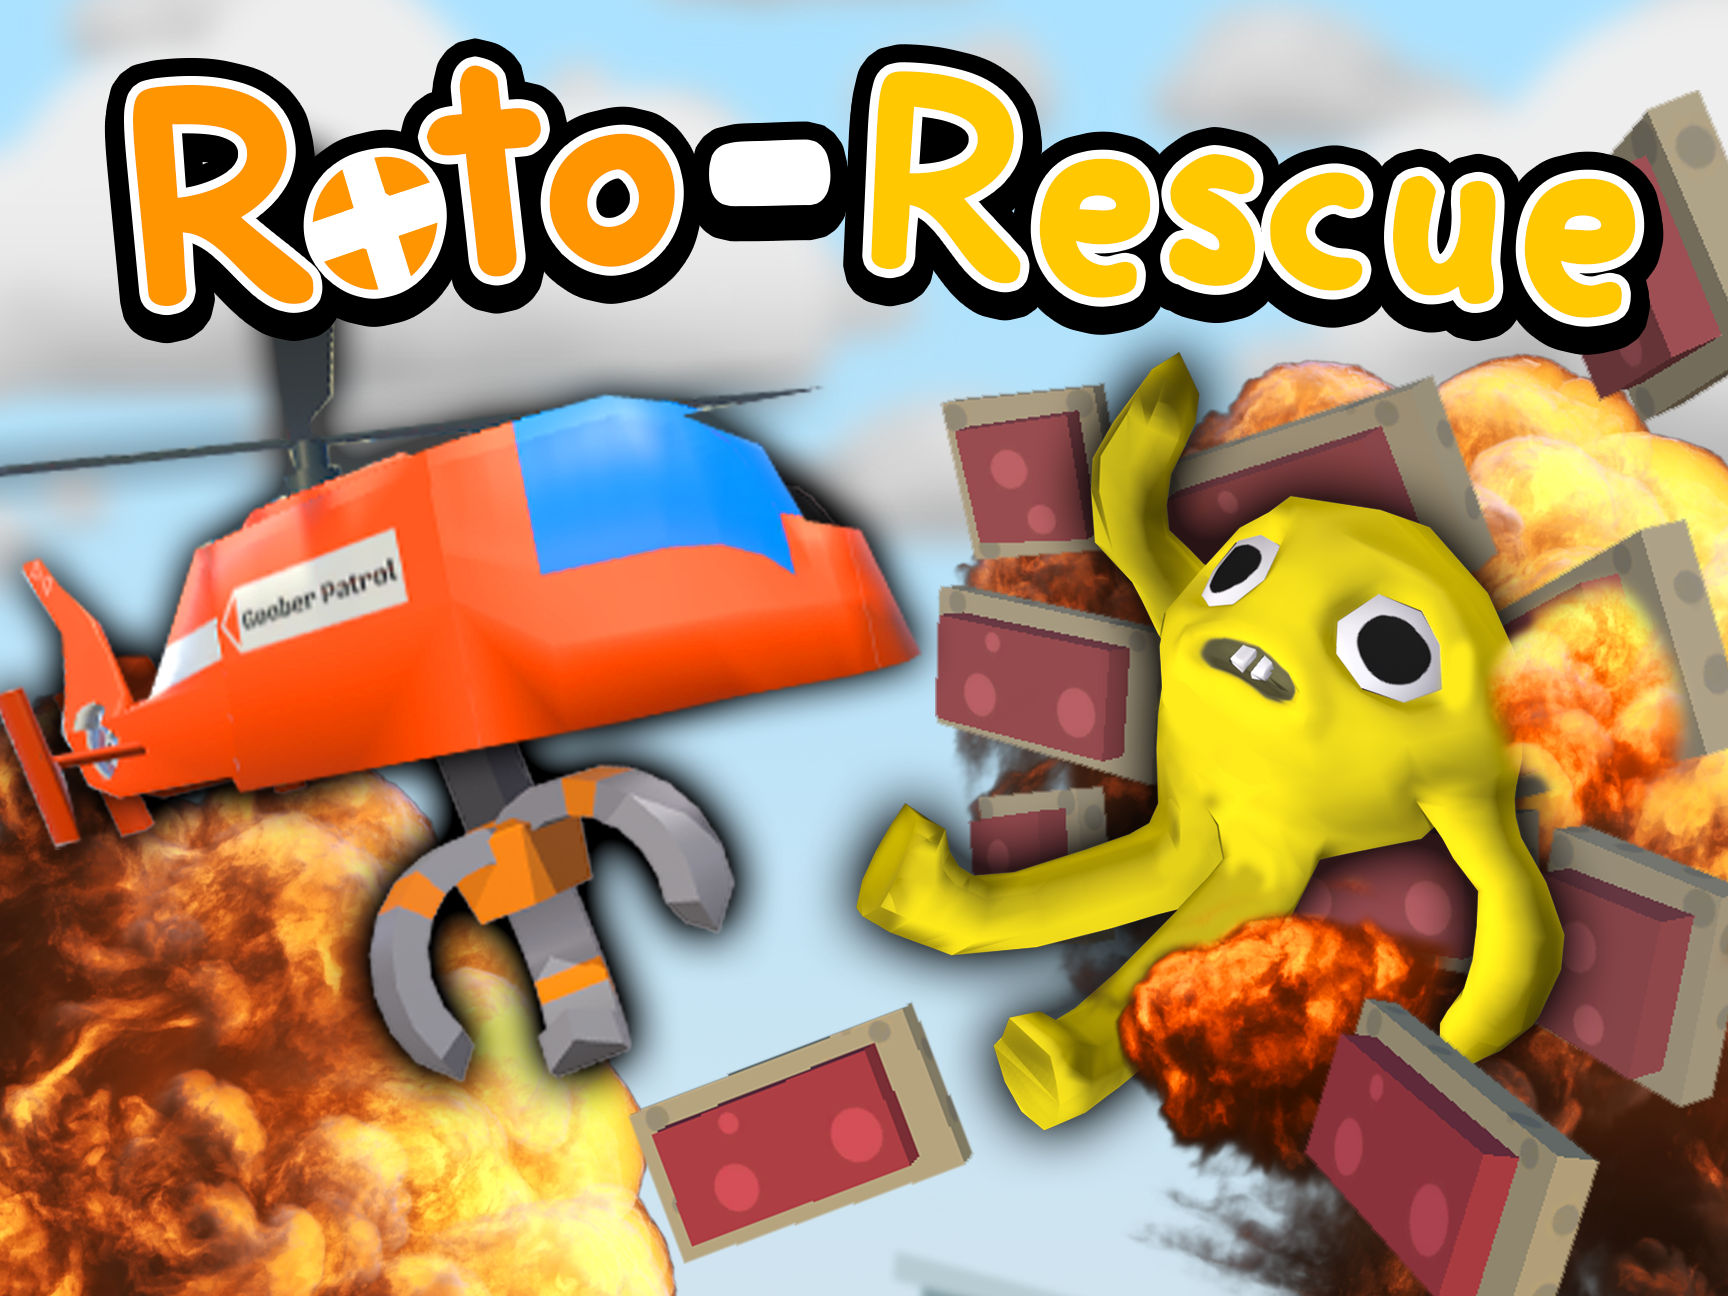 Roto-Rescue